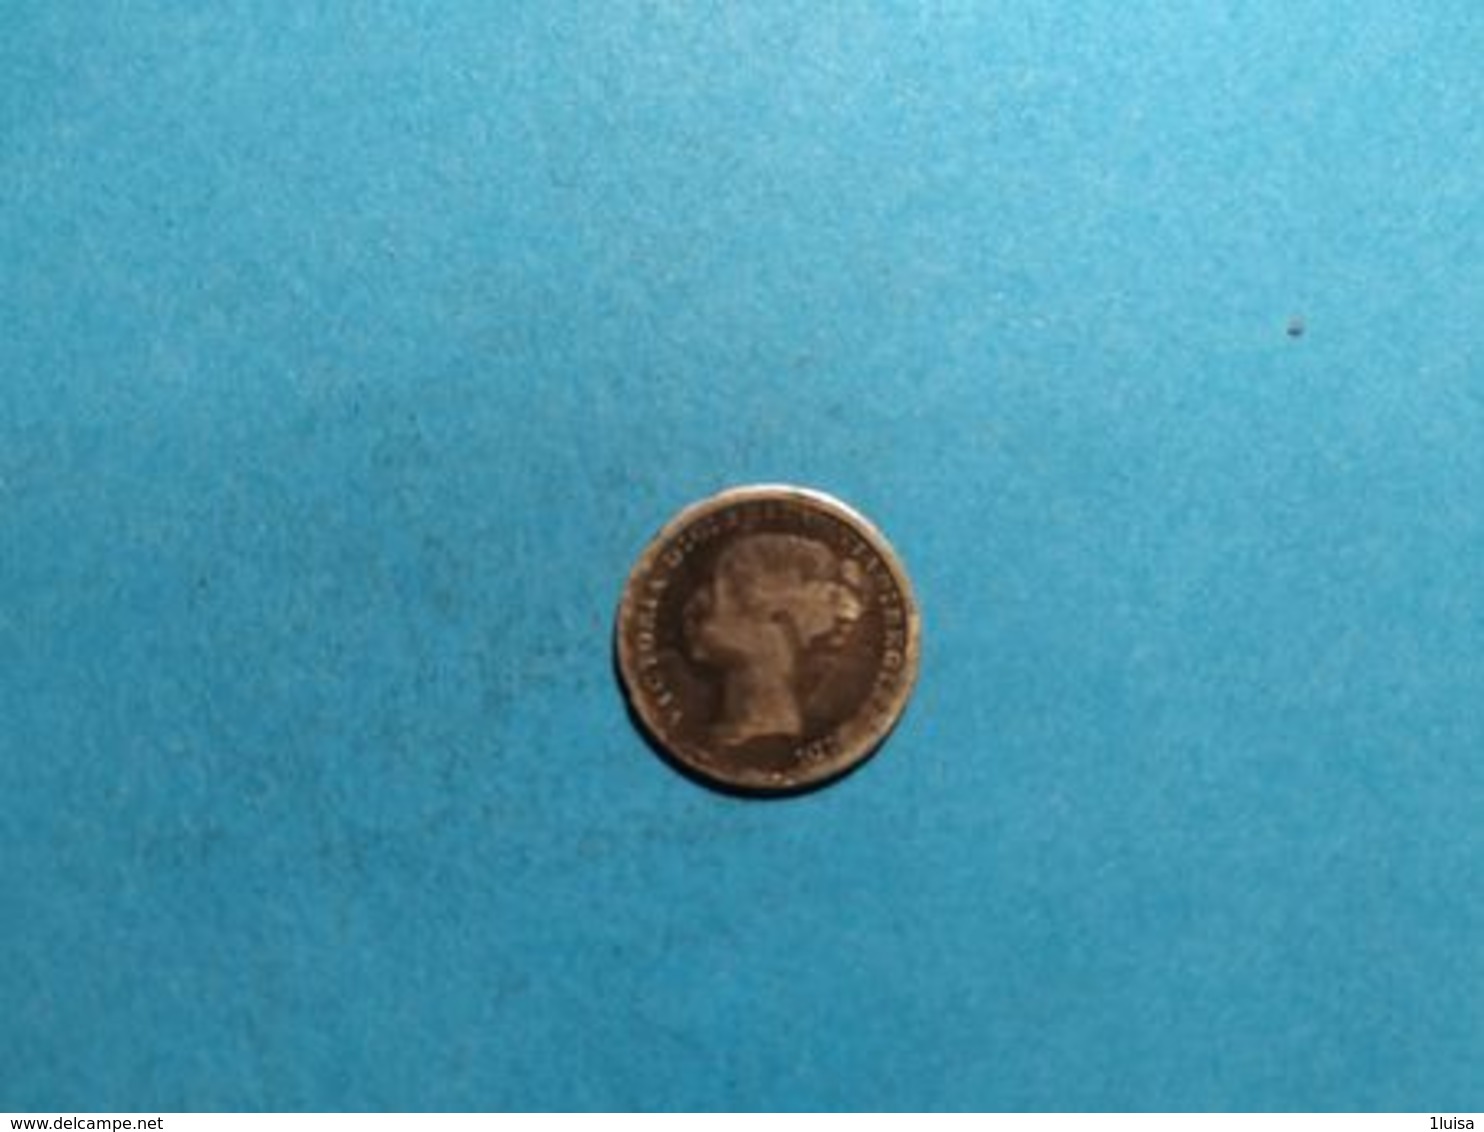 GRAN BRETAGNA 3 PENCE 1872 - F. 3 Pence